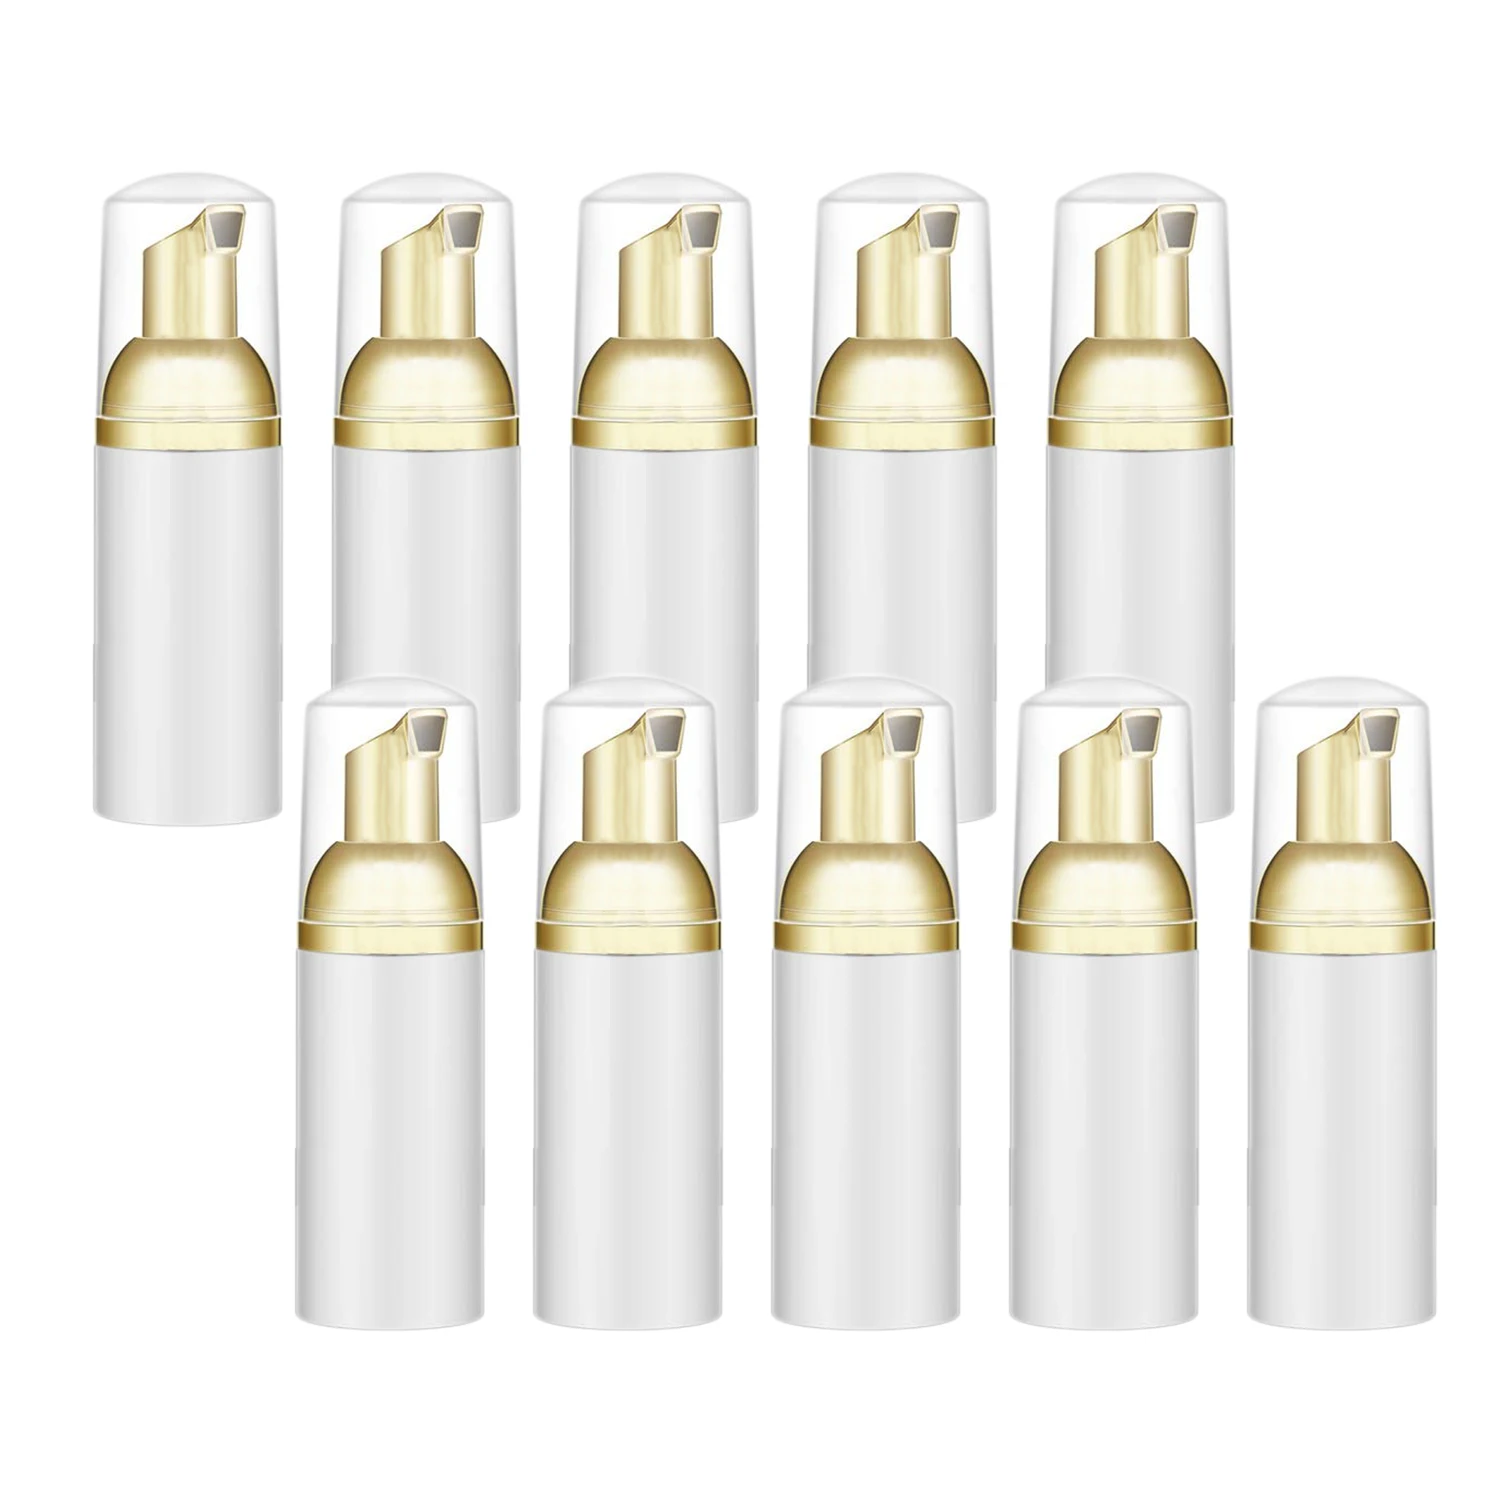 10 Pieces Plastic Travel Foaming Soap Dispenser | Mini Empty Foaming Liquid Soap Pump Bottles Lash Cleanser Bottles